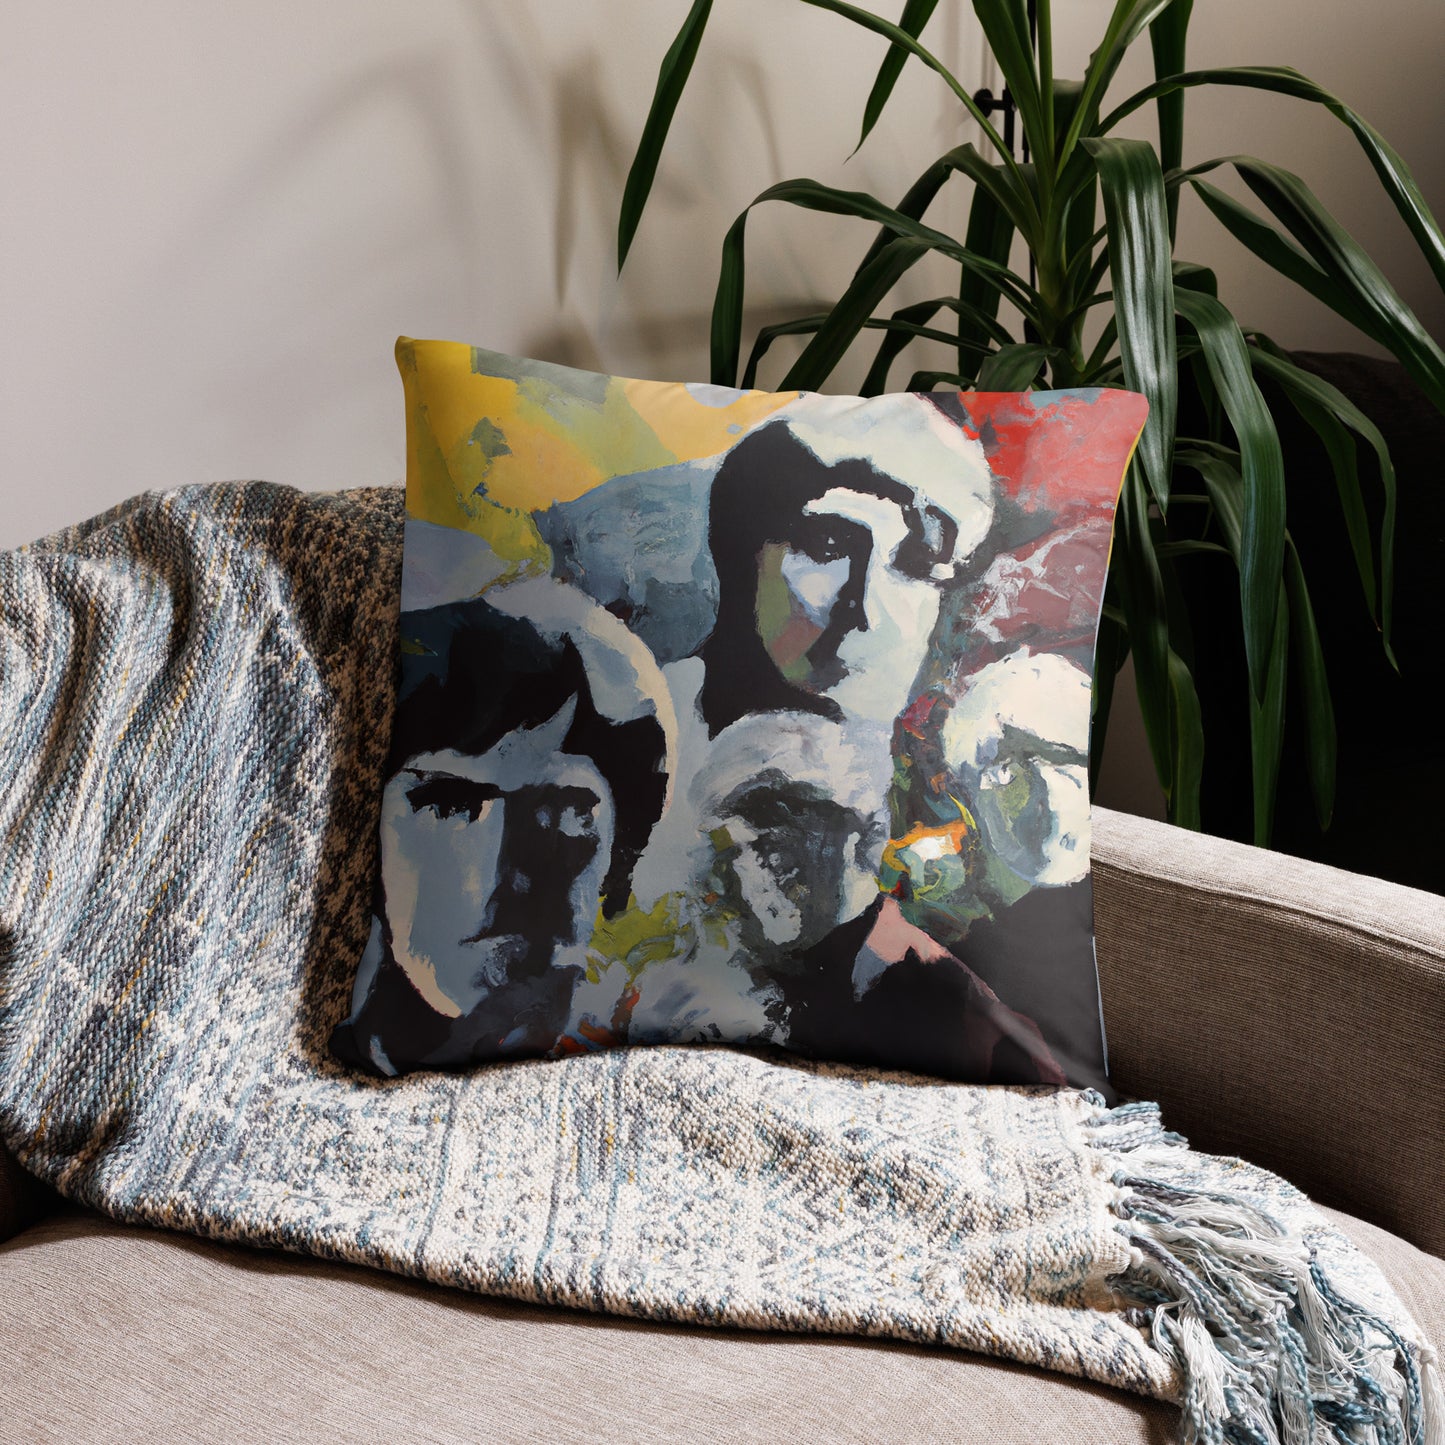 Portraits, Decorative Throw Pillow, High Quality Image, For Home Decor and Interior Design